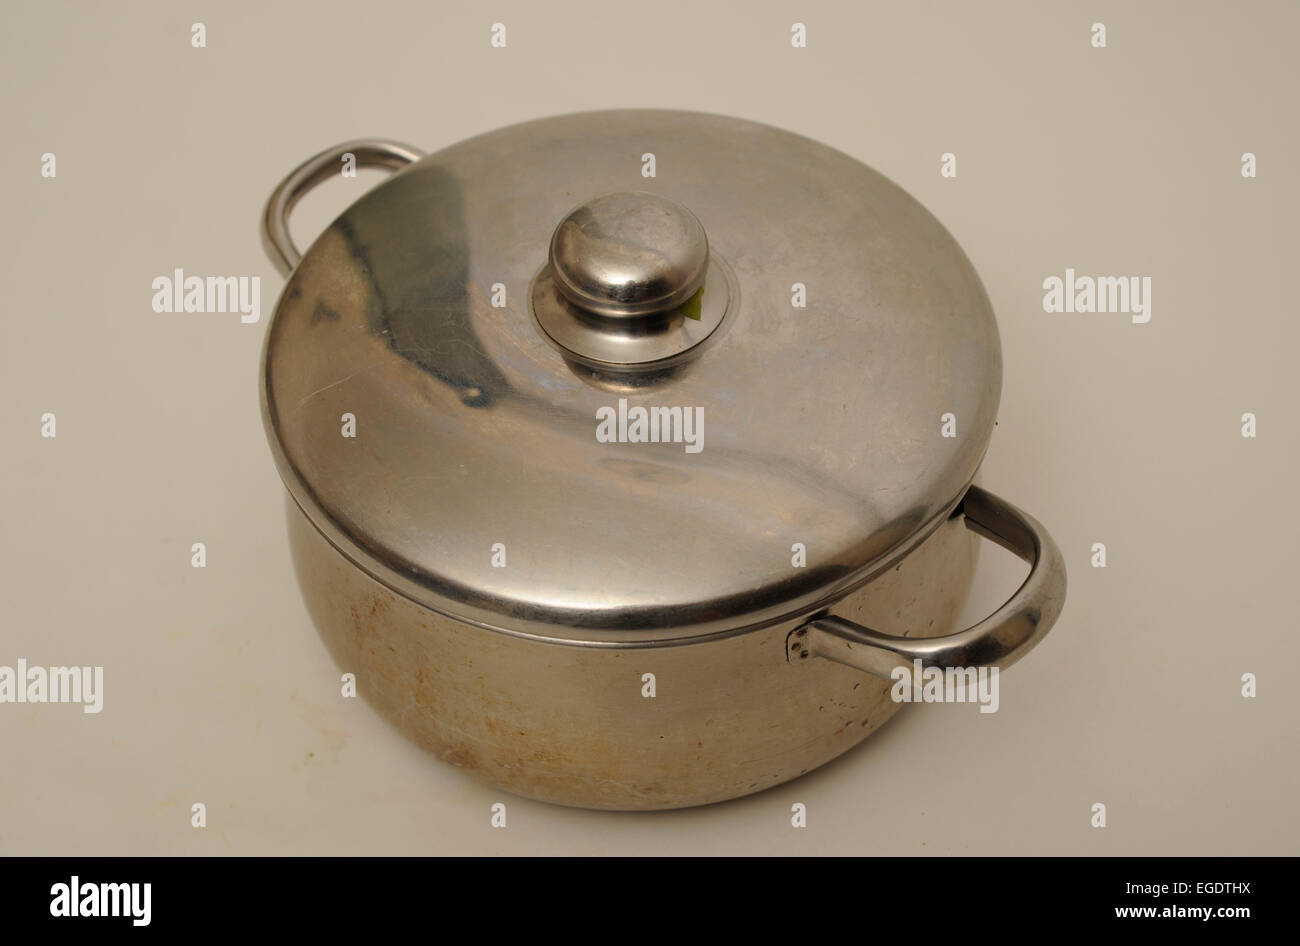 https://c8.alamy.com/comp/EGDTHX/stainless-steel-cooking-pot-EGDTHX.jpg